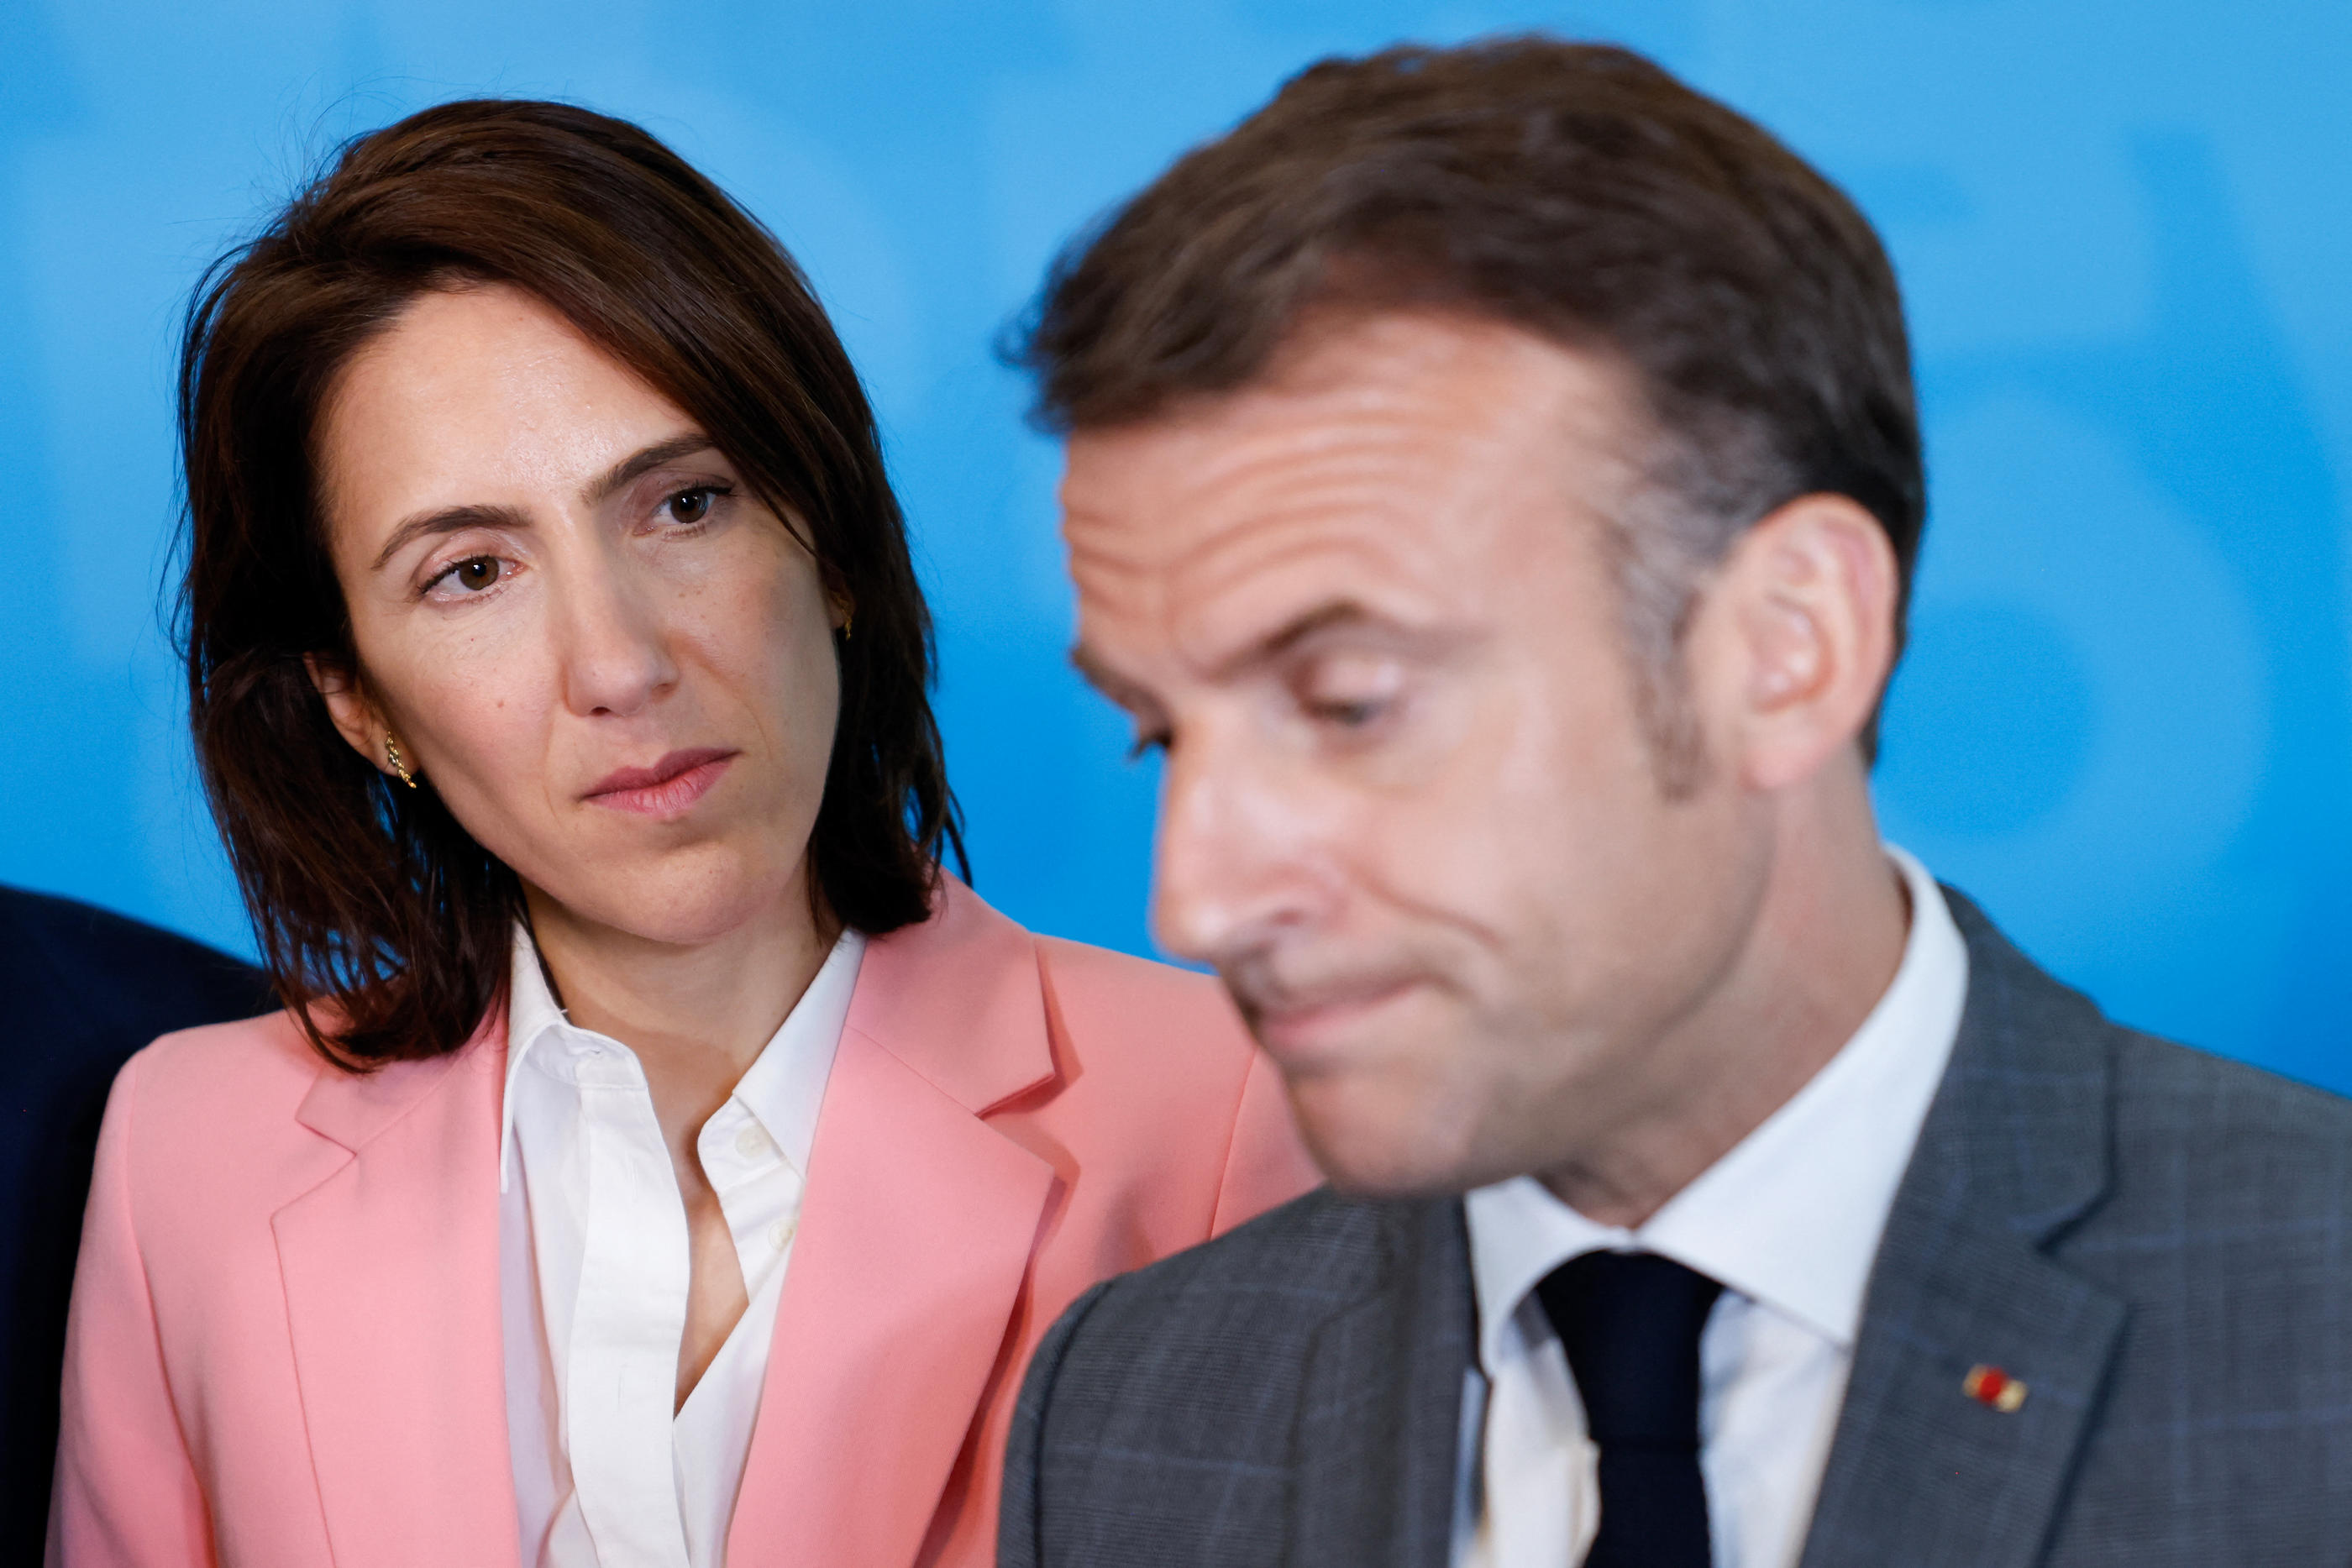 Les derniers sondages donnent la liste de Valérie Hayer (ici avec Emmanuel Macron le 17 avril à Bruxelles), largement distancée par celle du RN conduite par Jordan Bardella. AFP/Ludovic Marin